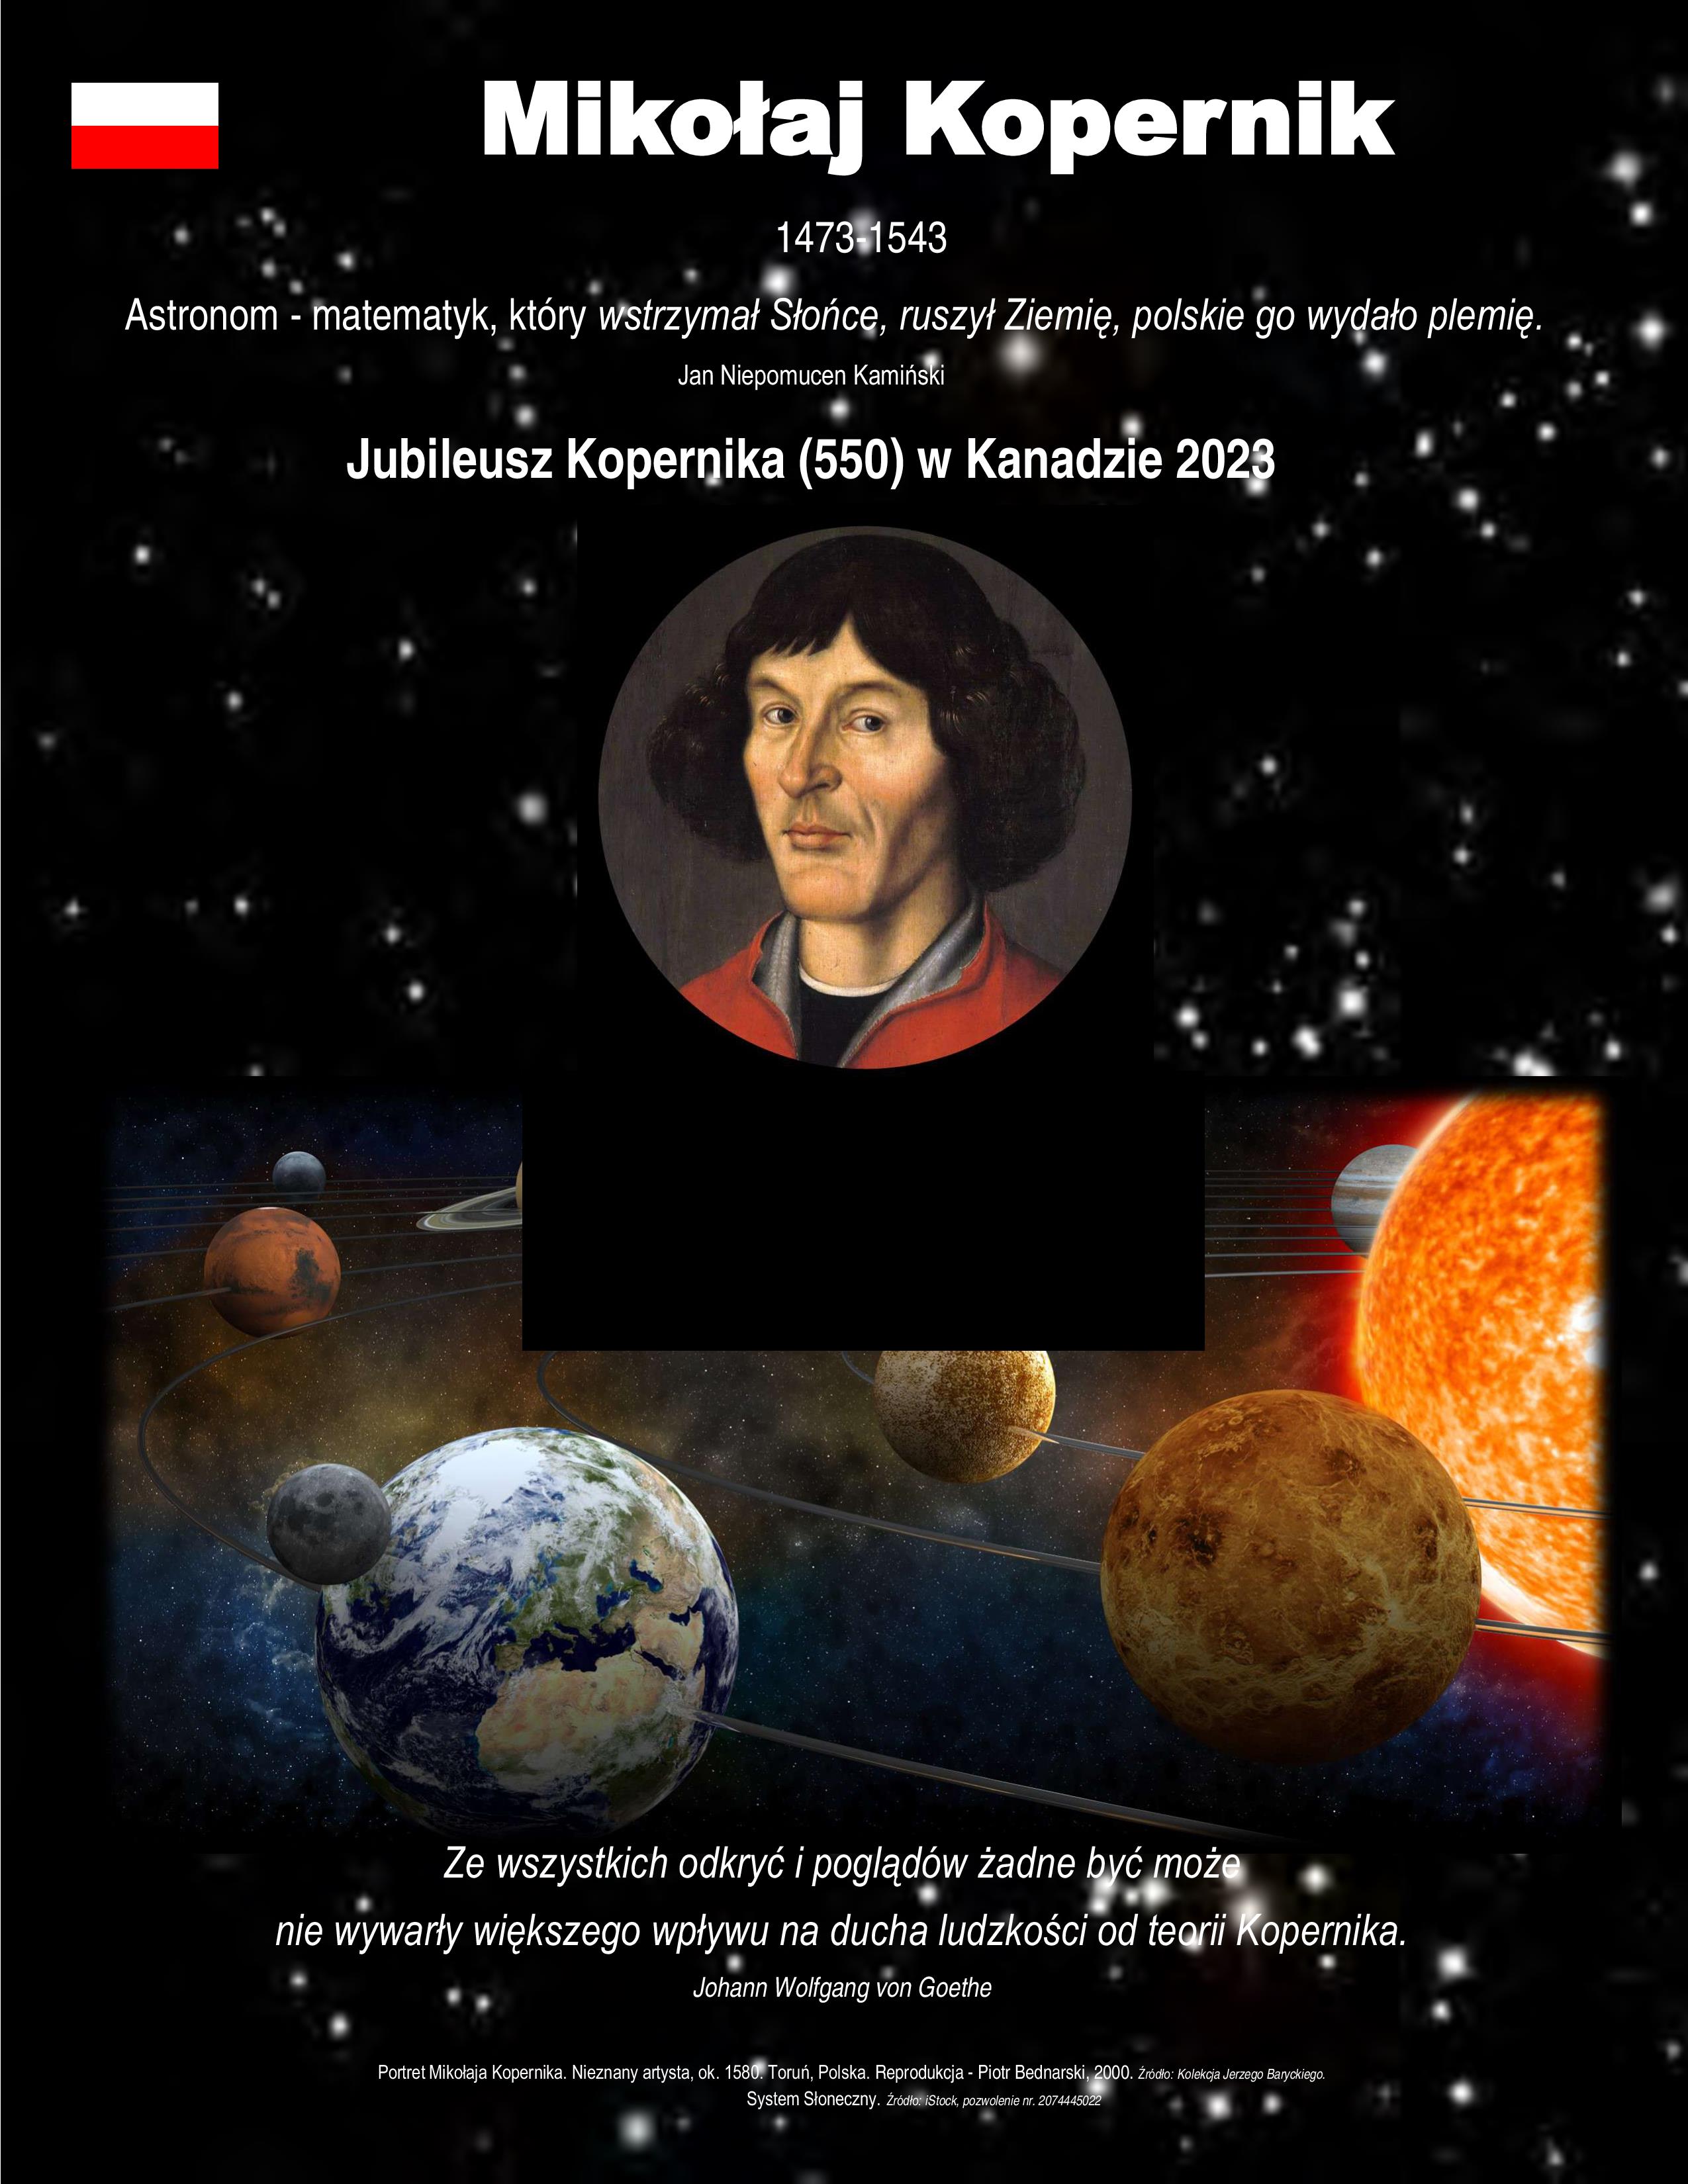 Polsko-kanadyjska wystawa o Koperniku